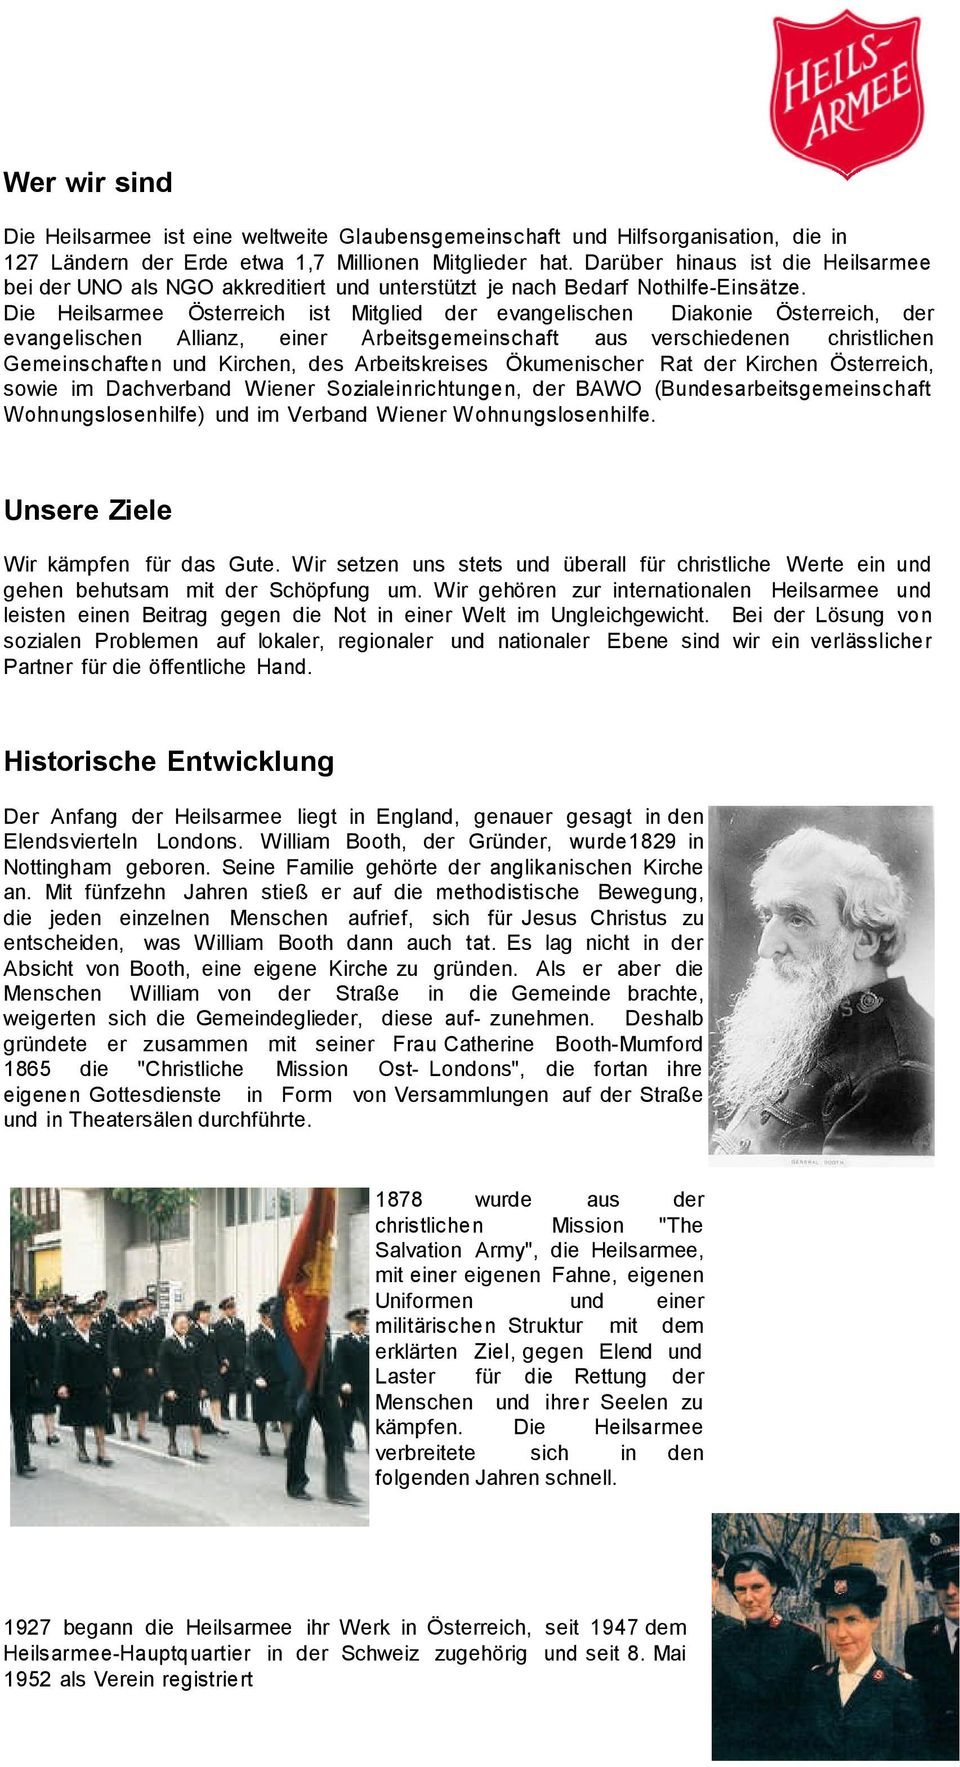 Die Heilsarmee Österreich ist Mitglied der evangelischen Diakonie Österreich, der evangelischen Allianz, einer Arbeitsgemeinschaft aus verschiedenen christlichen Gemeinschaften und Kirchen, des